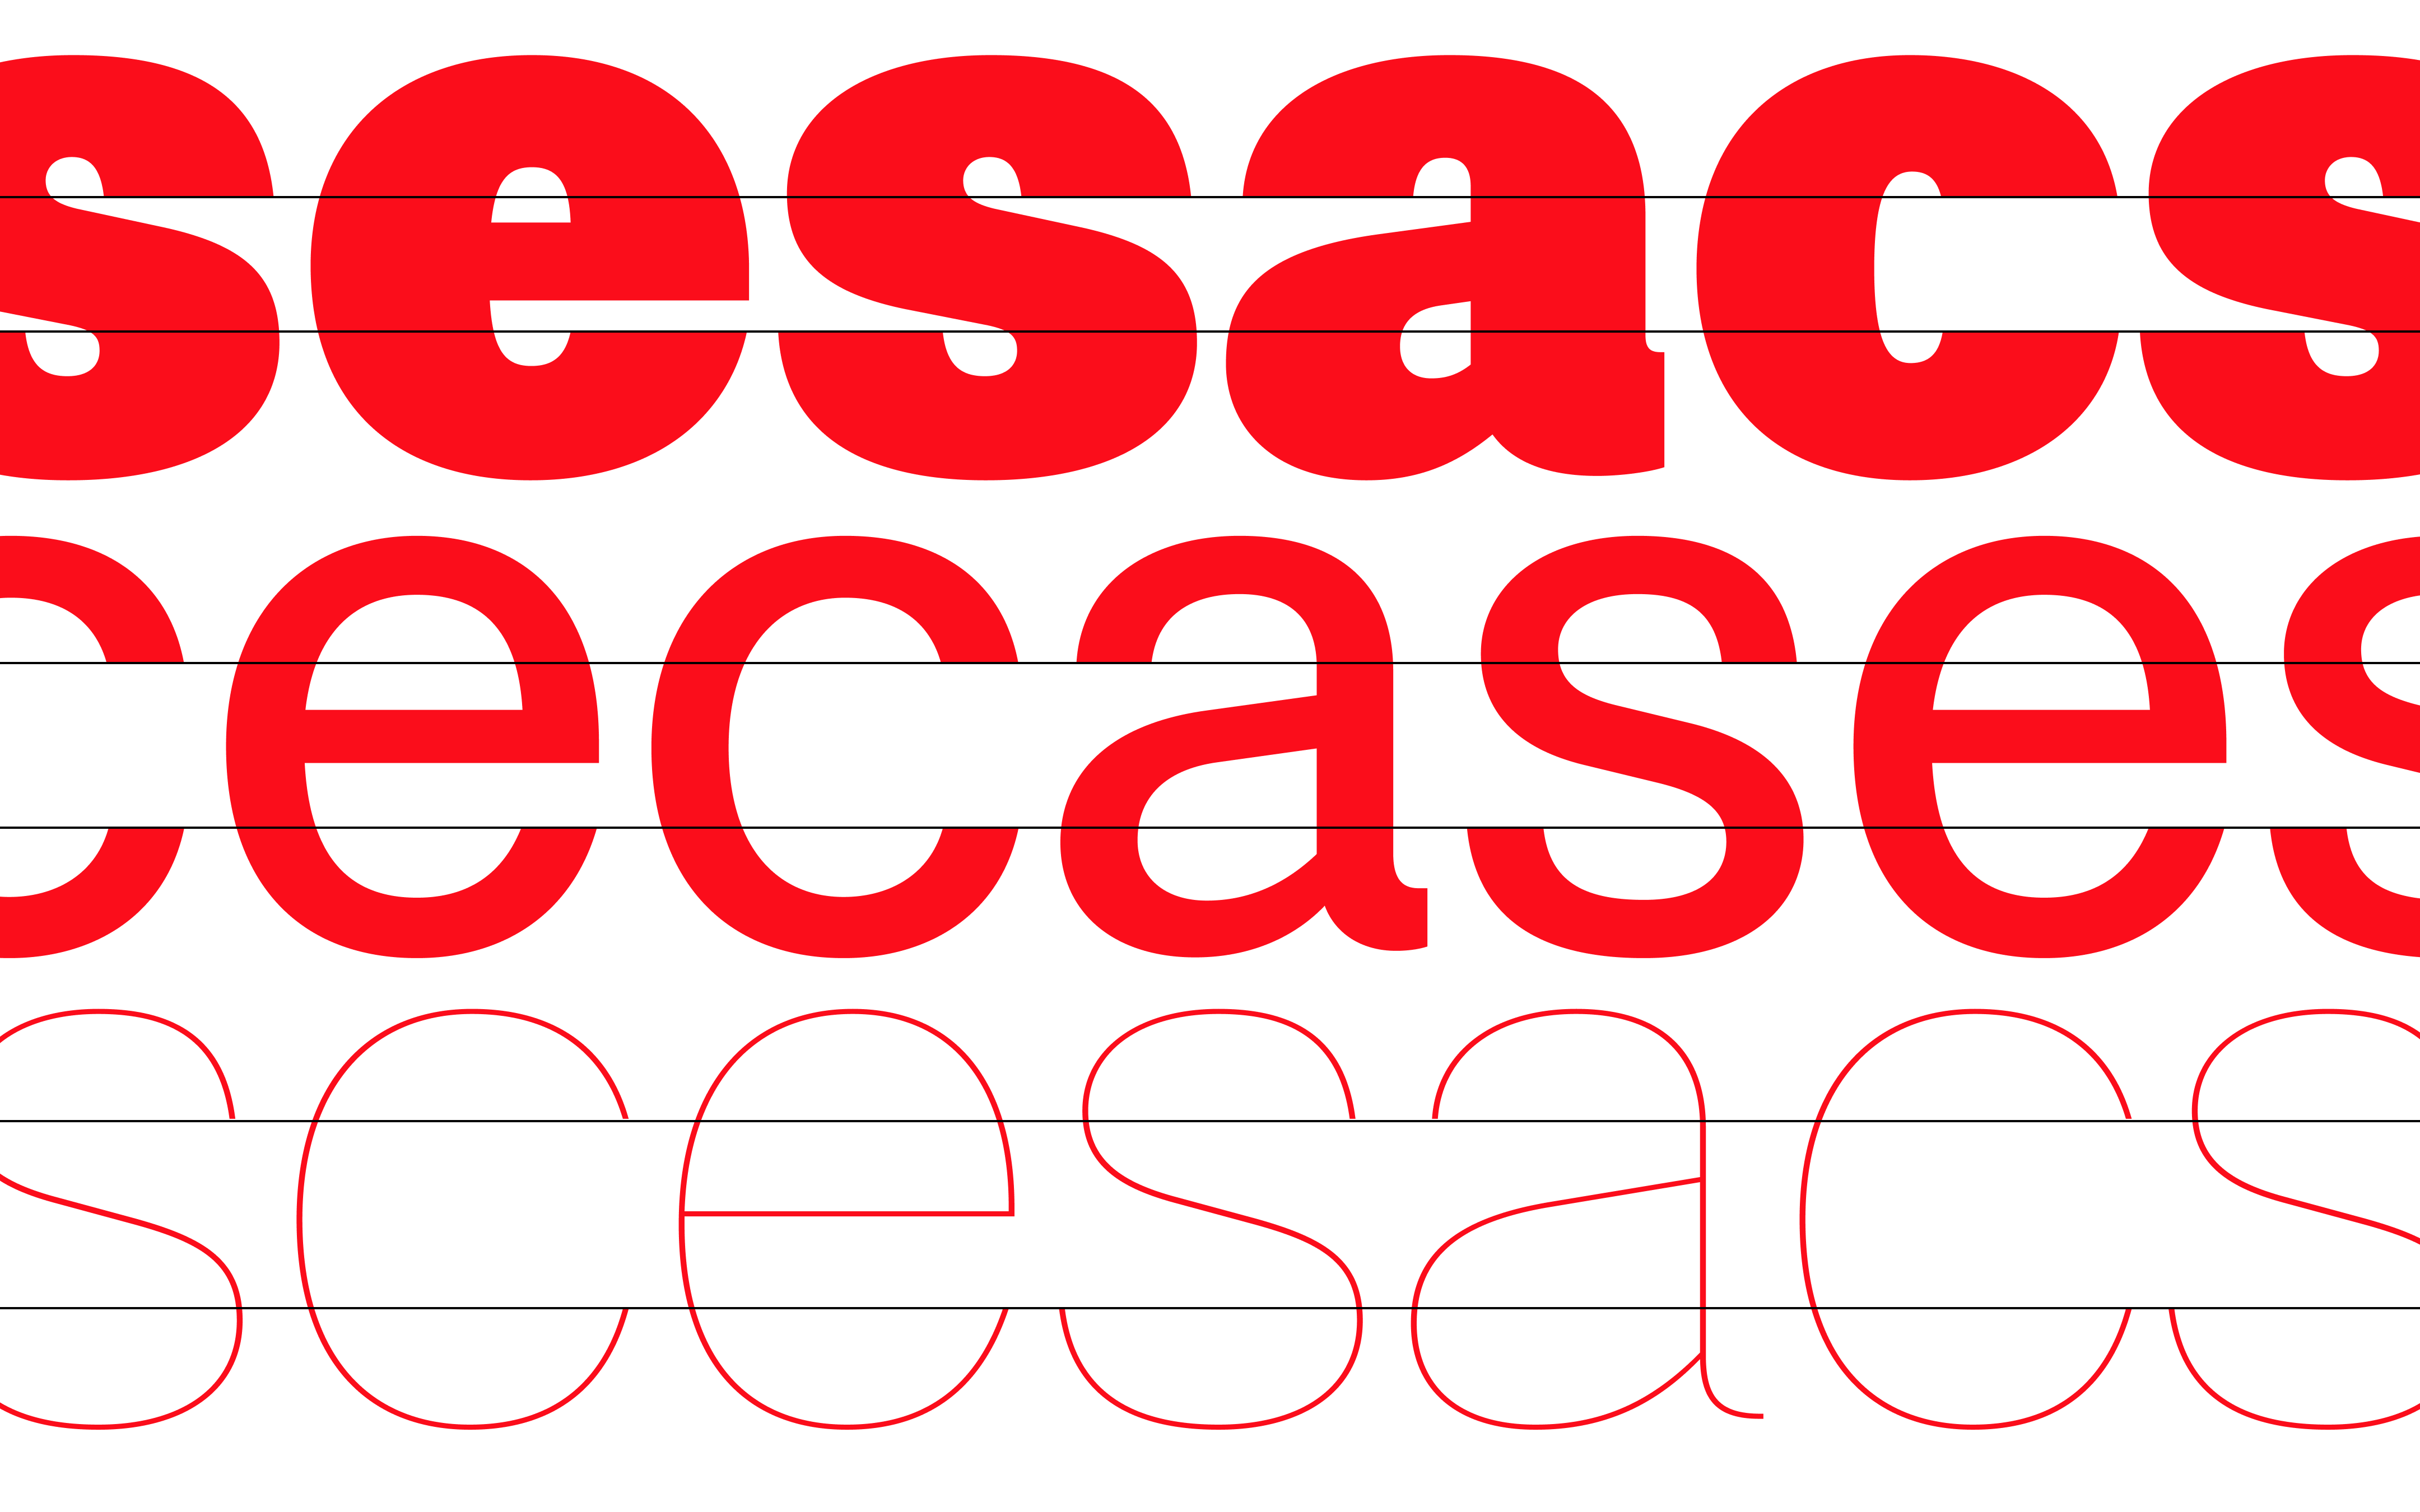 Case™-Schrift-Collection von Fontwerk – Schriftmuster, Marketing-Artwork (Betonung auf Horizontale)